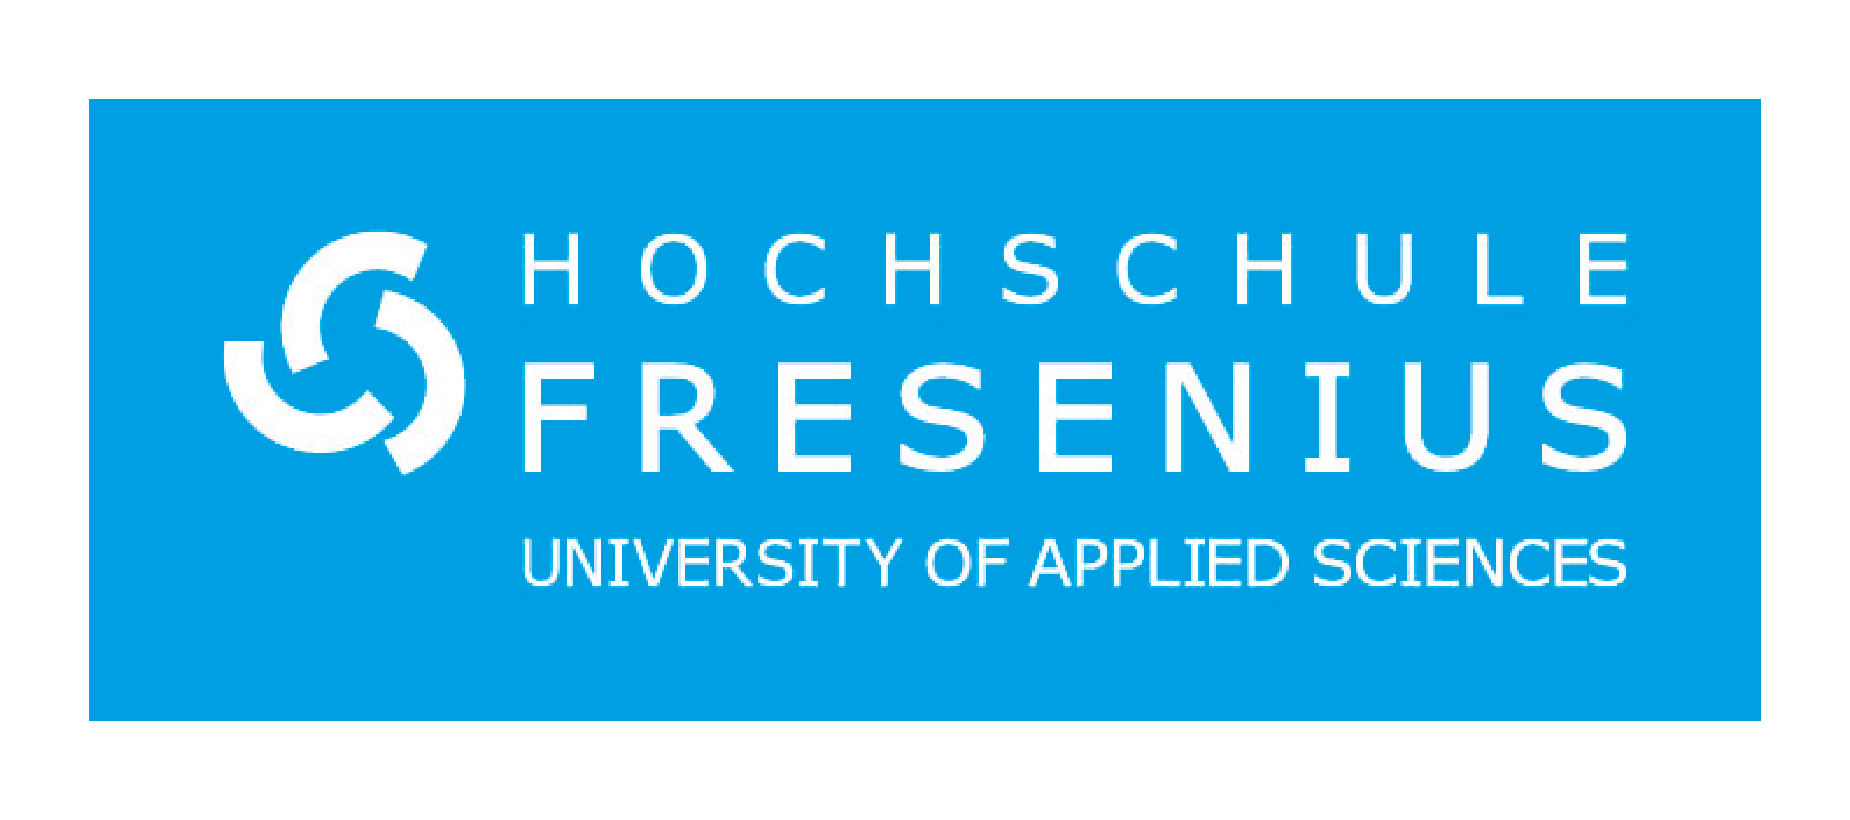 Hochschule Fresenius: Ein Überblick